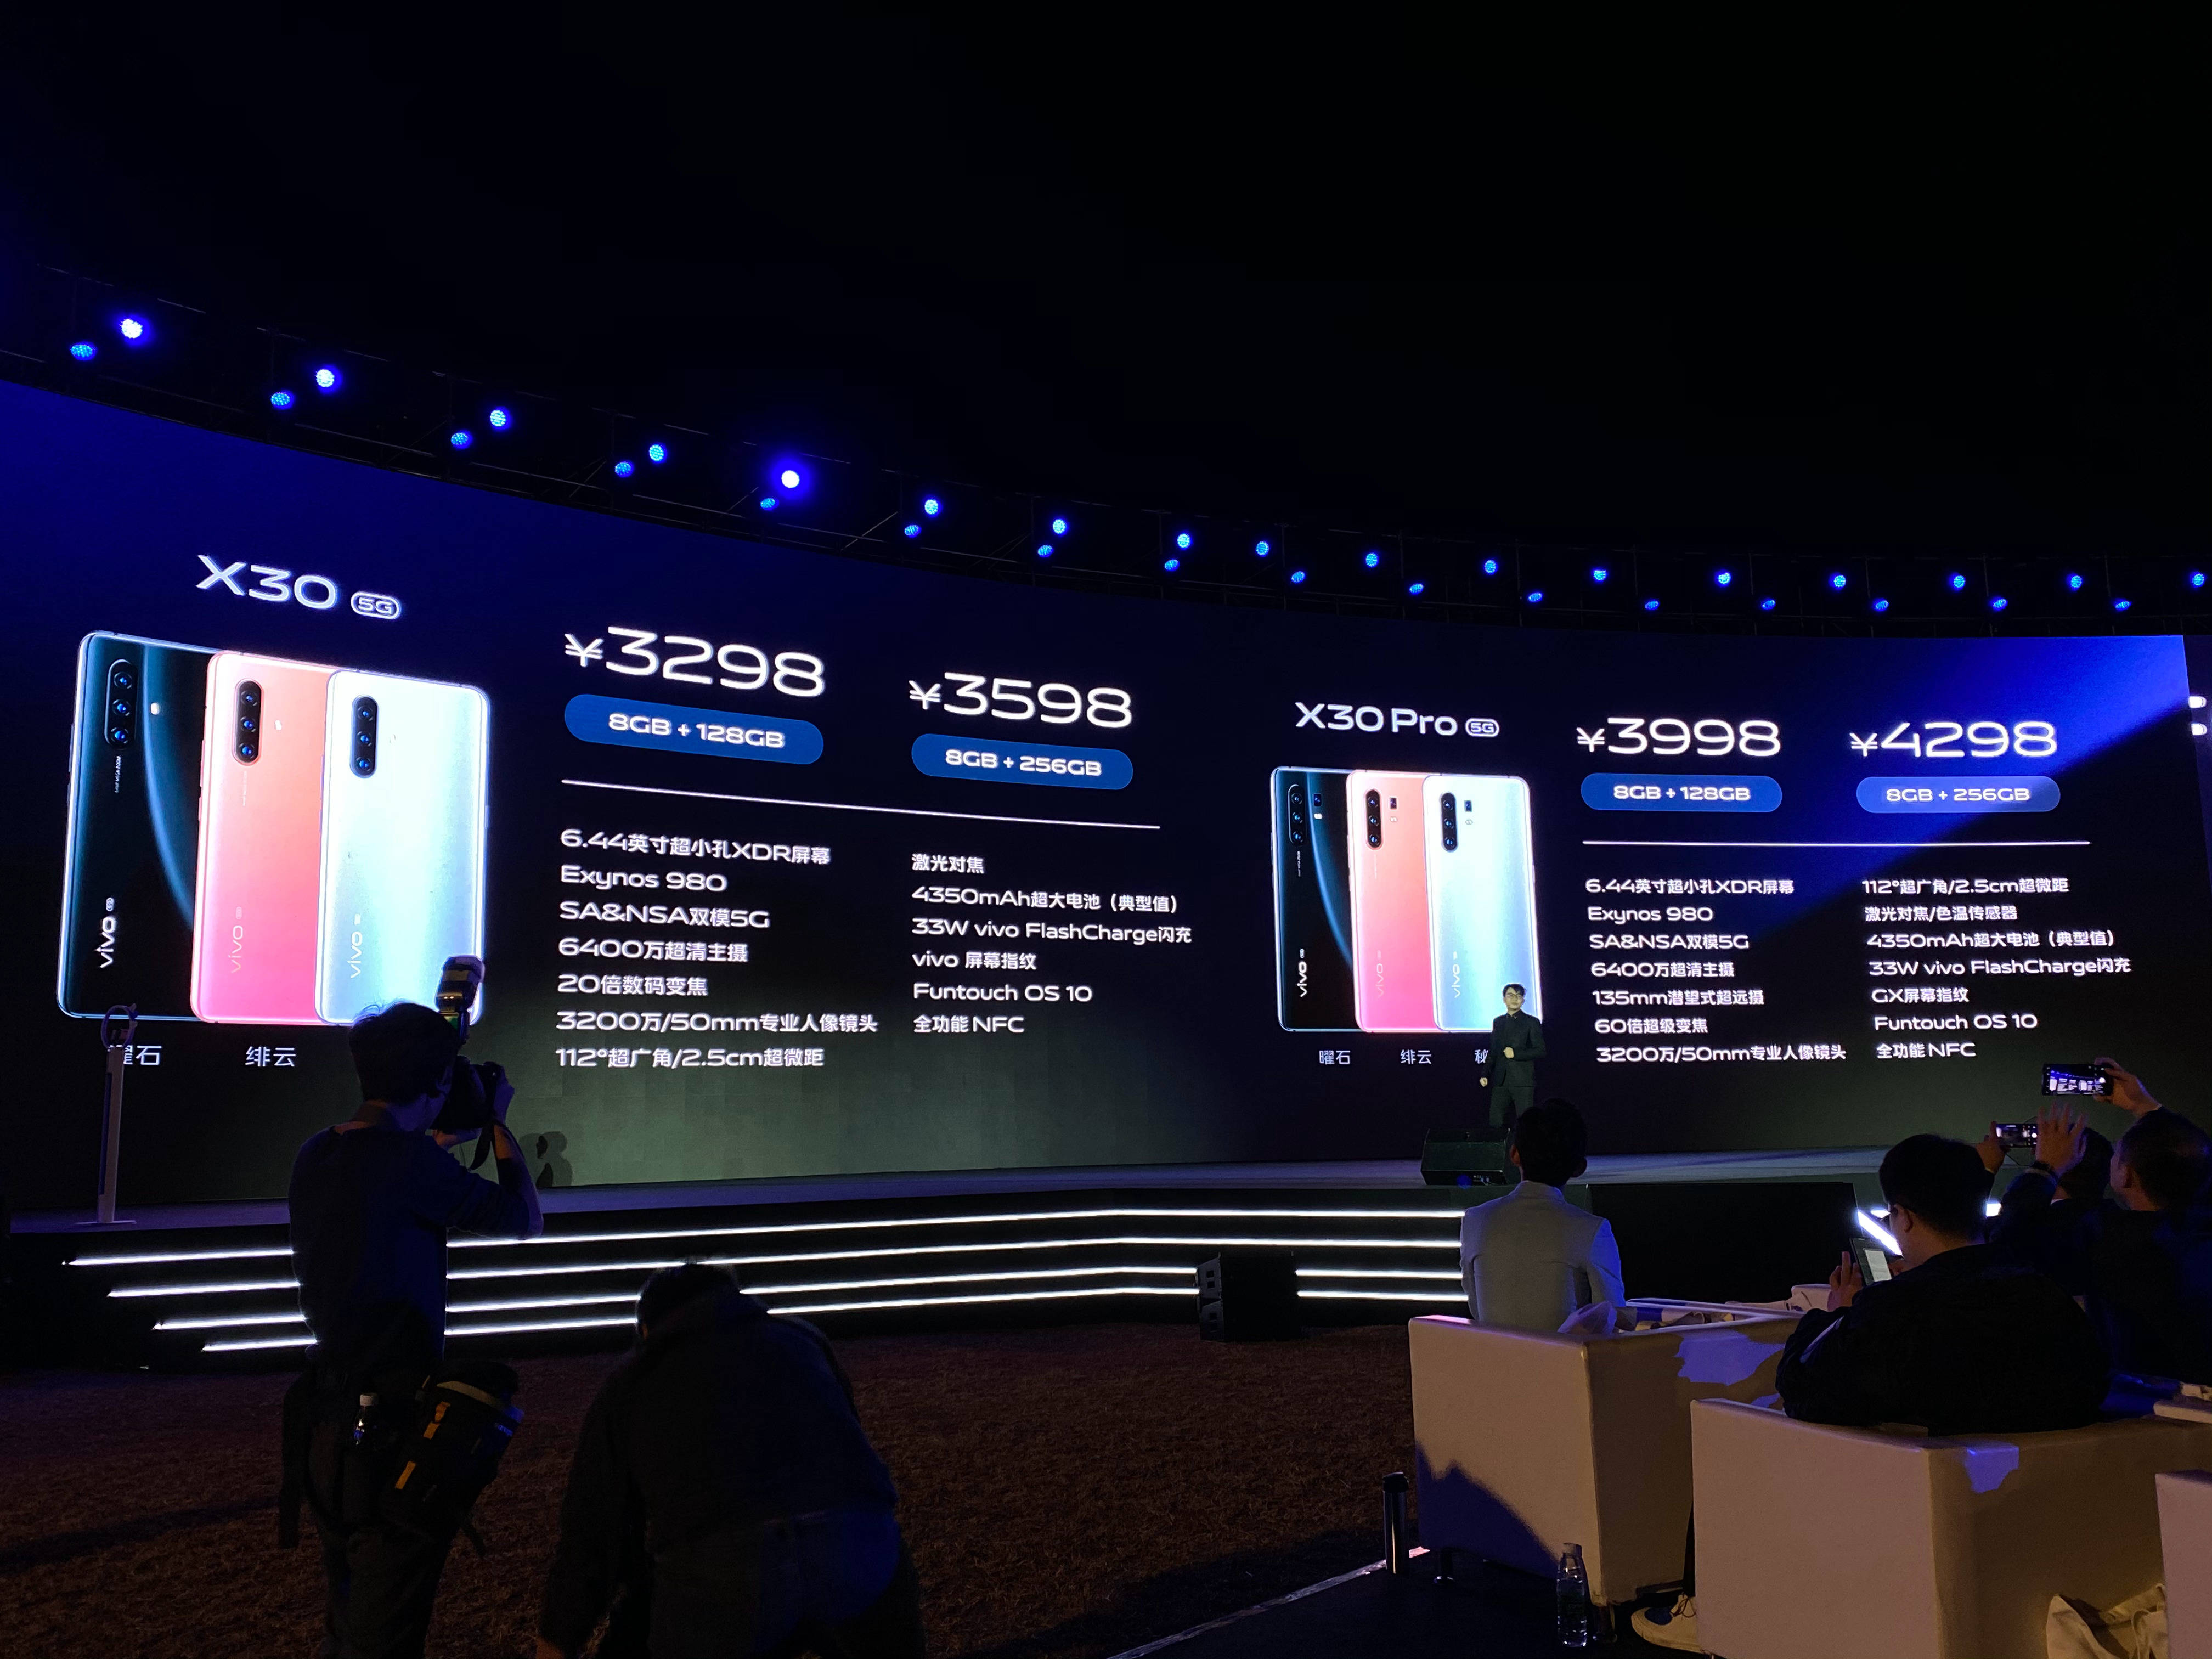 Vivo chính thức ra
mắt bộ đôi X30 và X30 Pro Với chip Exynos 980 của Samsung,
camera siêu zoom 60x và hỗ trợ 5G LTE